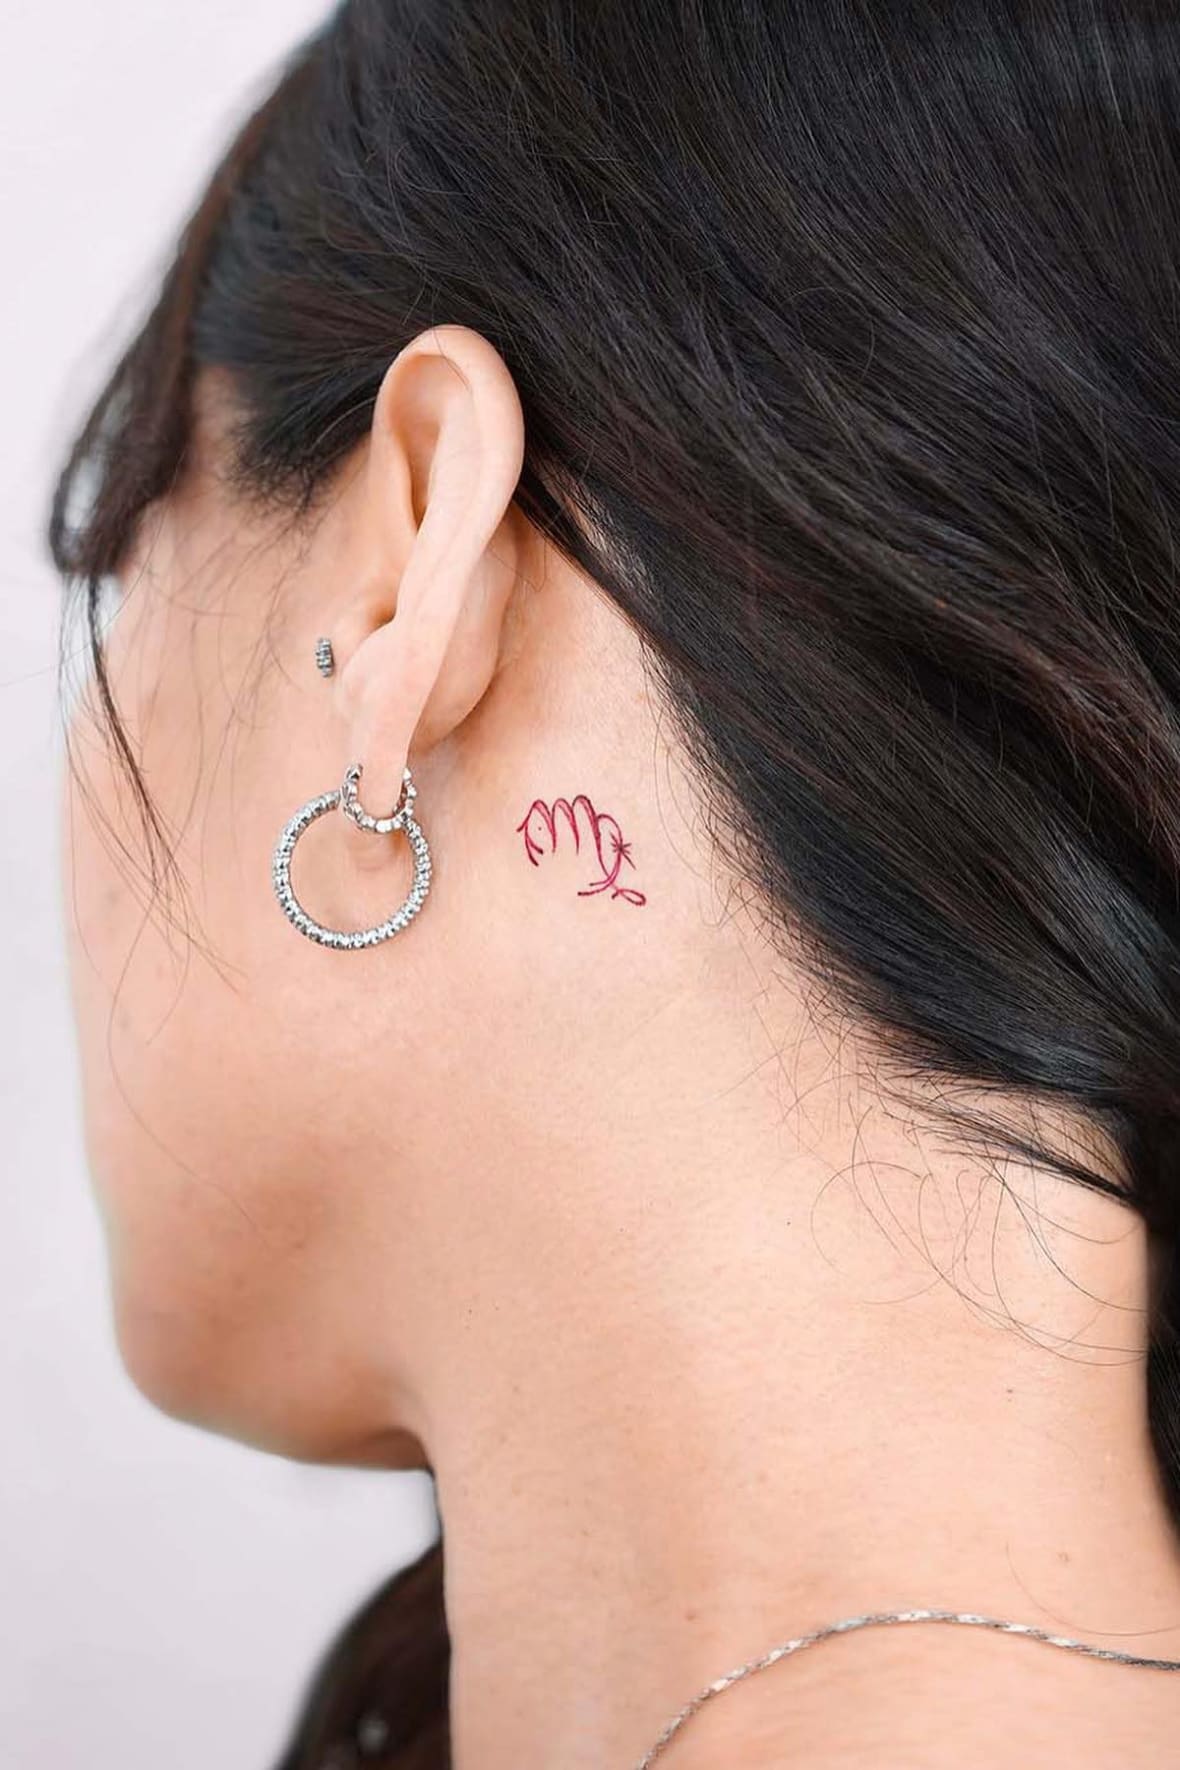 Virgo Tattoo Behind Ear